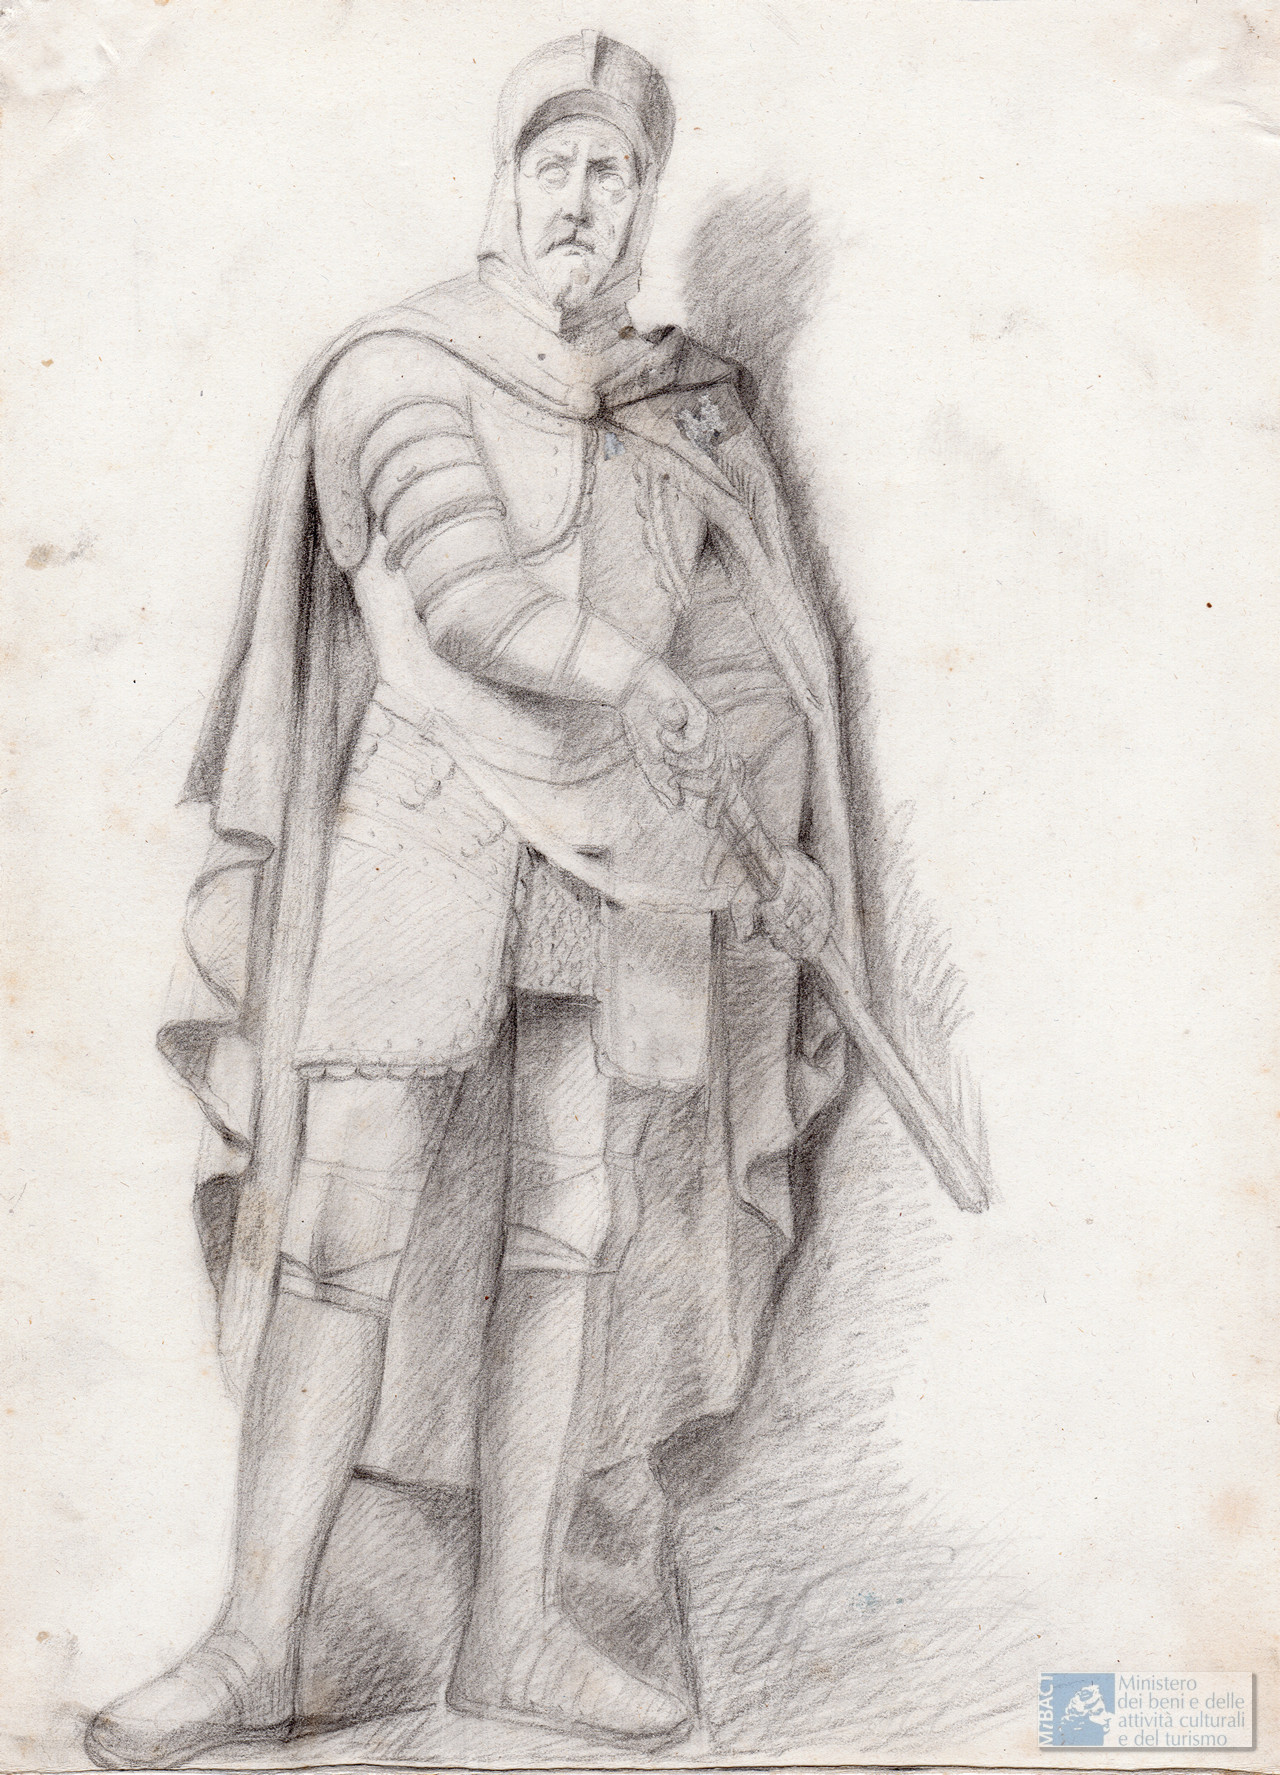 Bartolomeo Colleoni Sec. XIX. Disegno a carboncino (1 c.), mm 290 x 210. Anonimo